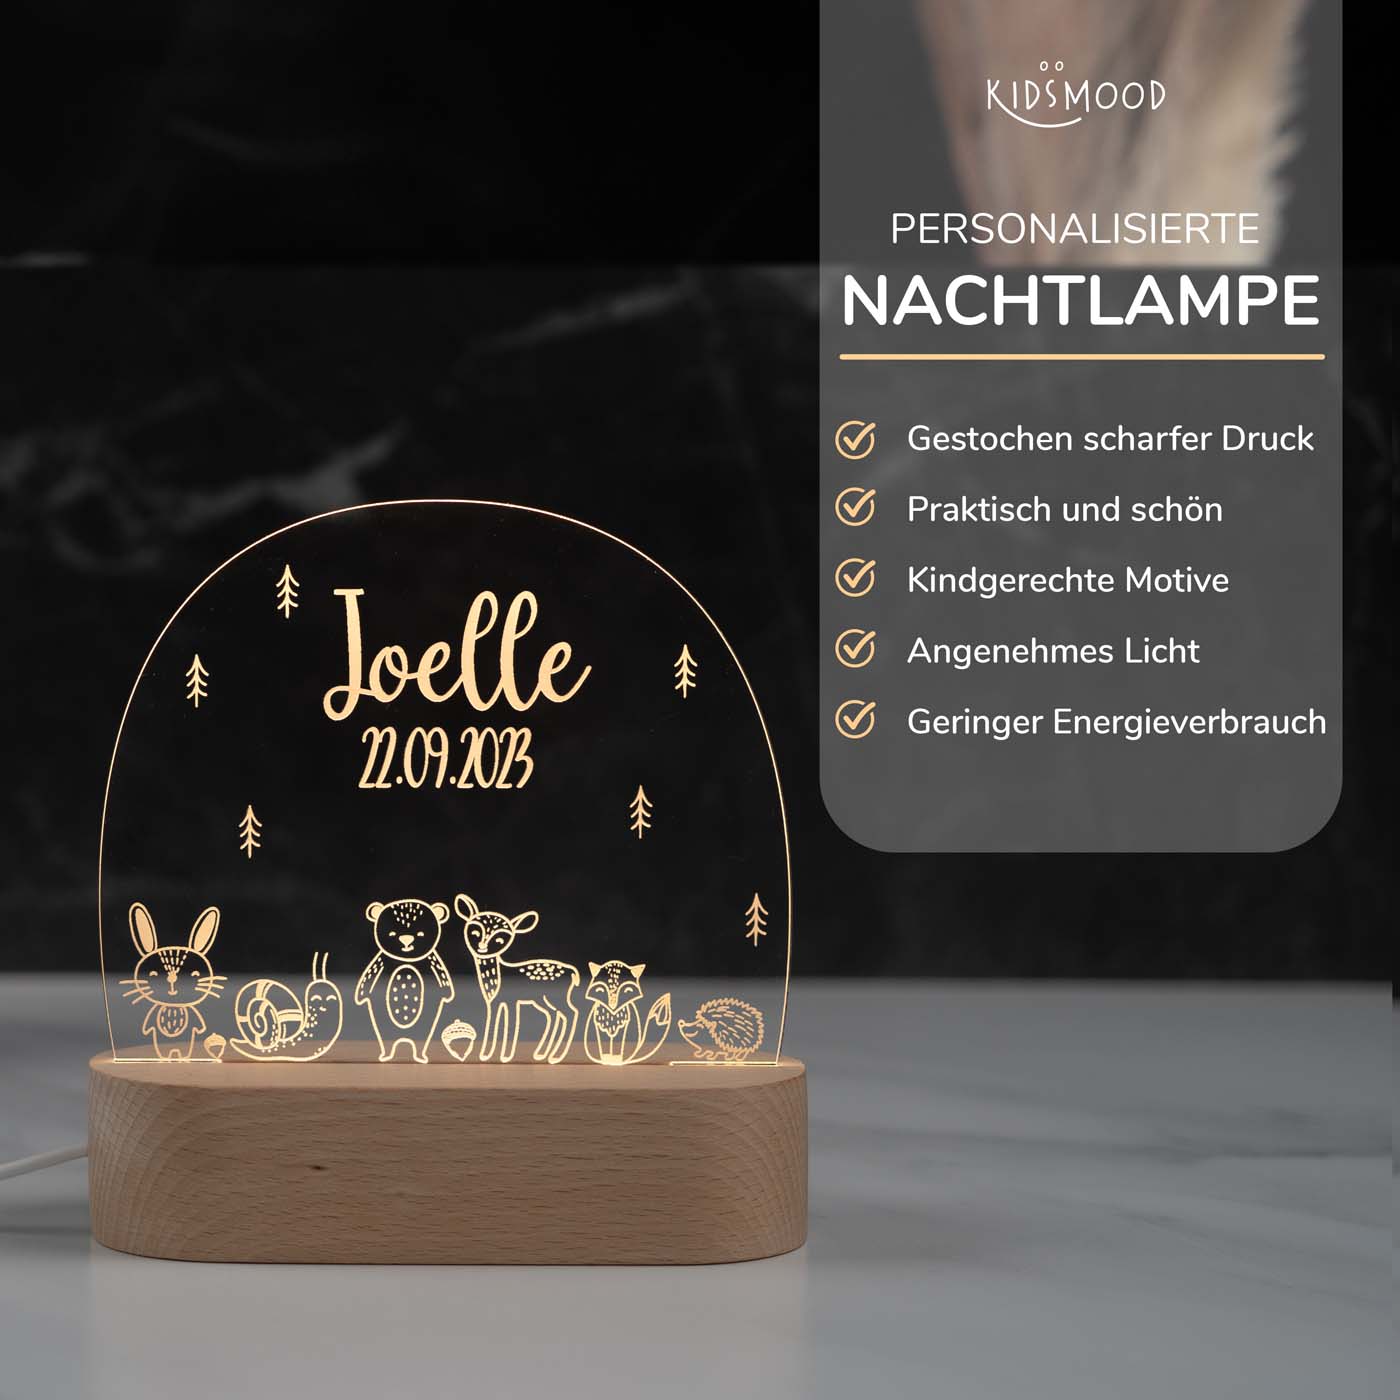 Personalisierte Nachtlampe für Kinder - Baby Waldtiere - Name und Geburtsdatum